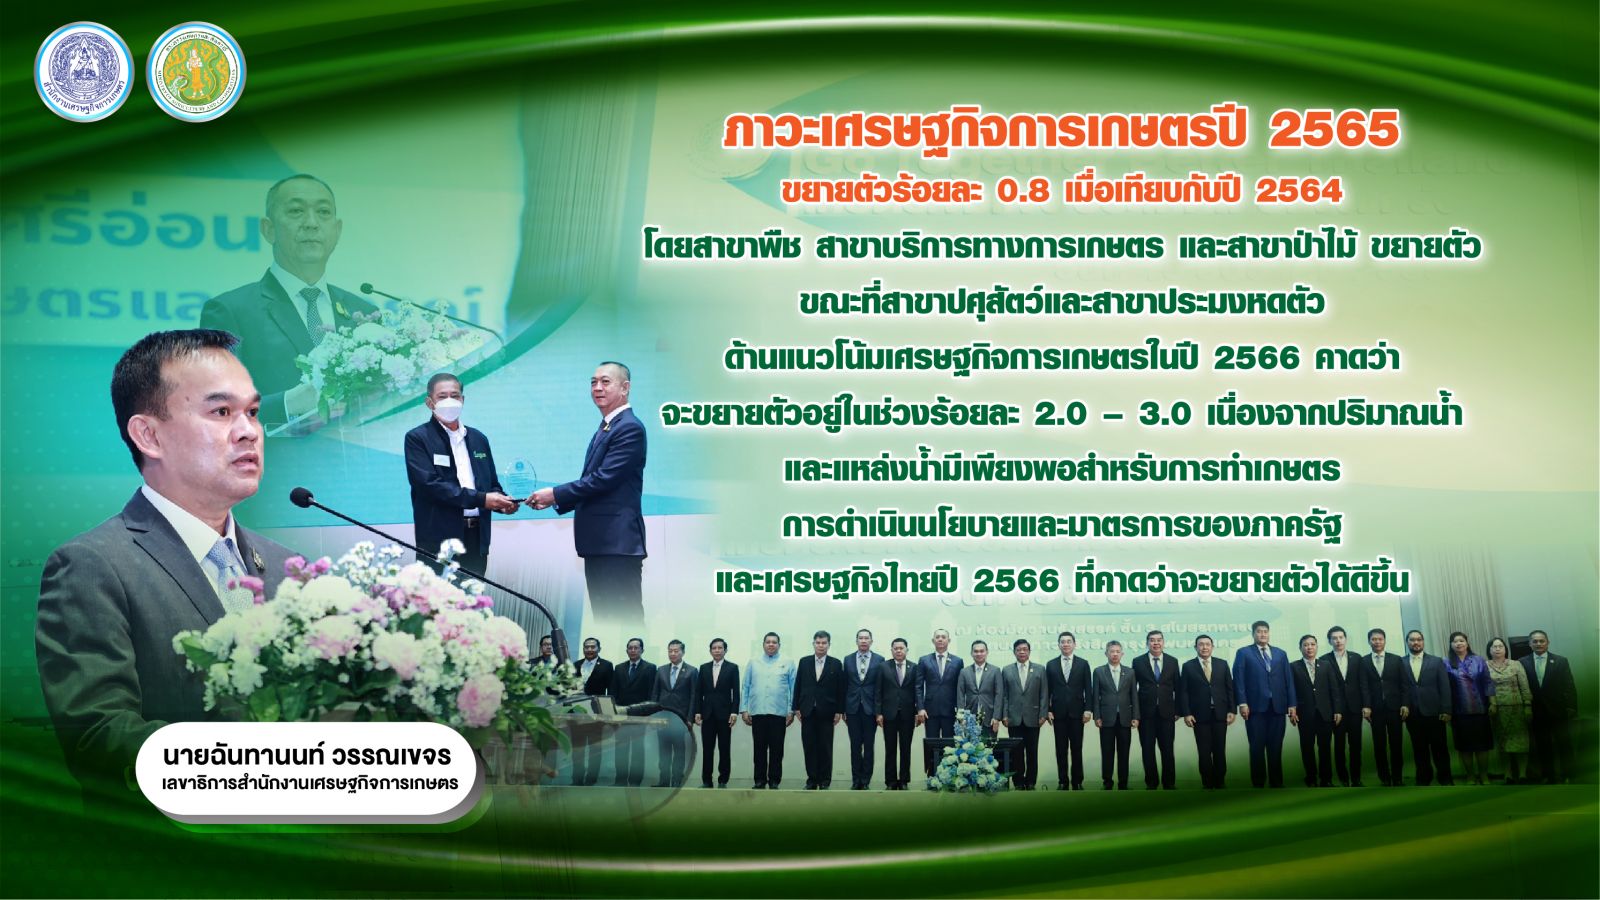 รัฐมนตรีเกษตรฯ เปิดงาน Year End สศก. ขึ้นเวทีปาฐกถา เกษตรเข้มแข็ง ประเทศไทยแข็งแกร่ง ด้าน สศก. แถลงตัวเลข จีดีพีเกษตร ปี 65 ขยายตัวร้อยละ 0.8